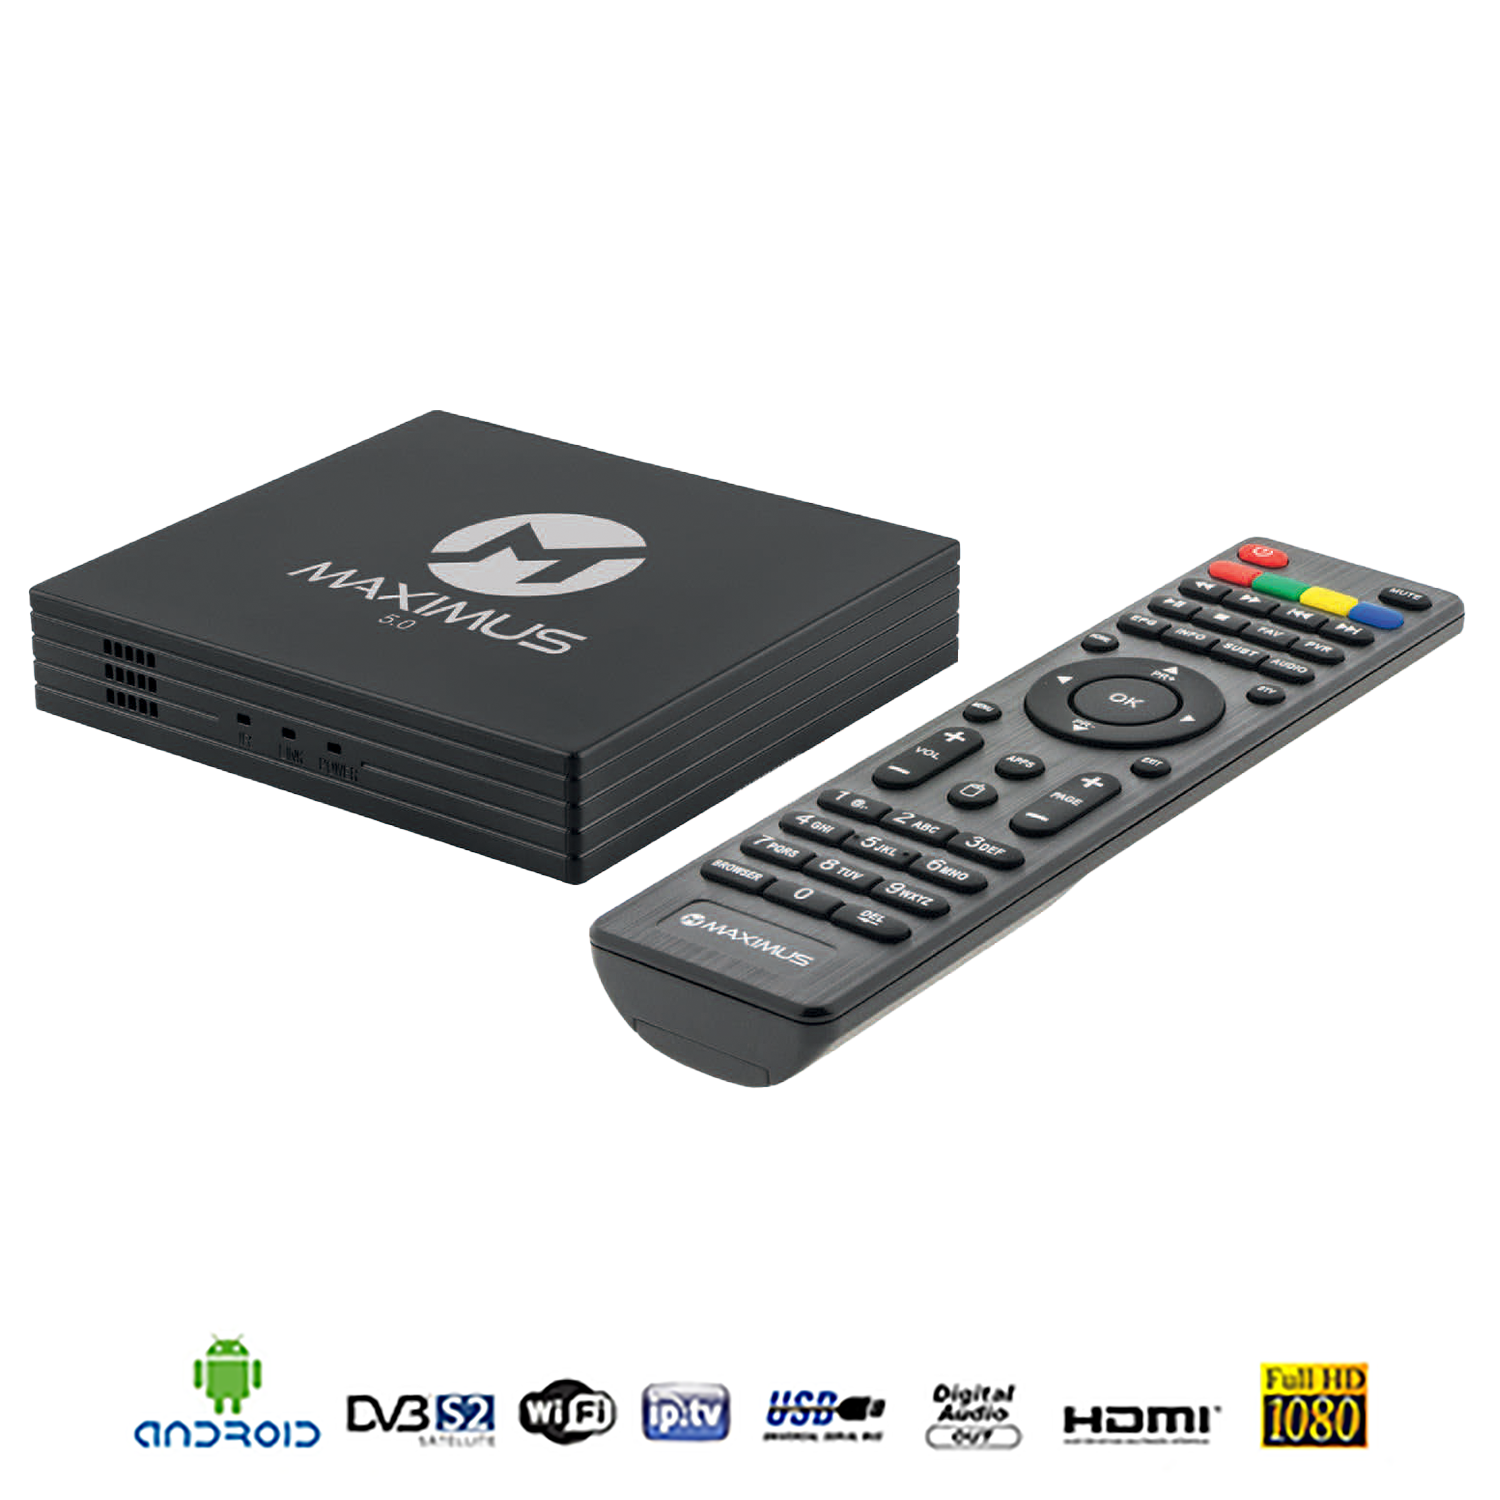 Maximus 5.0 - TV Receiver Wlan Box mit HDMI und Fernbedienung online kaufen  